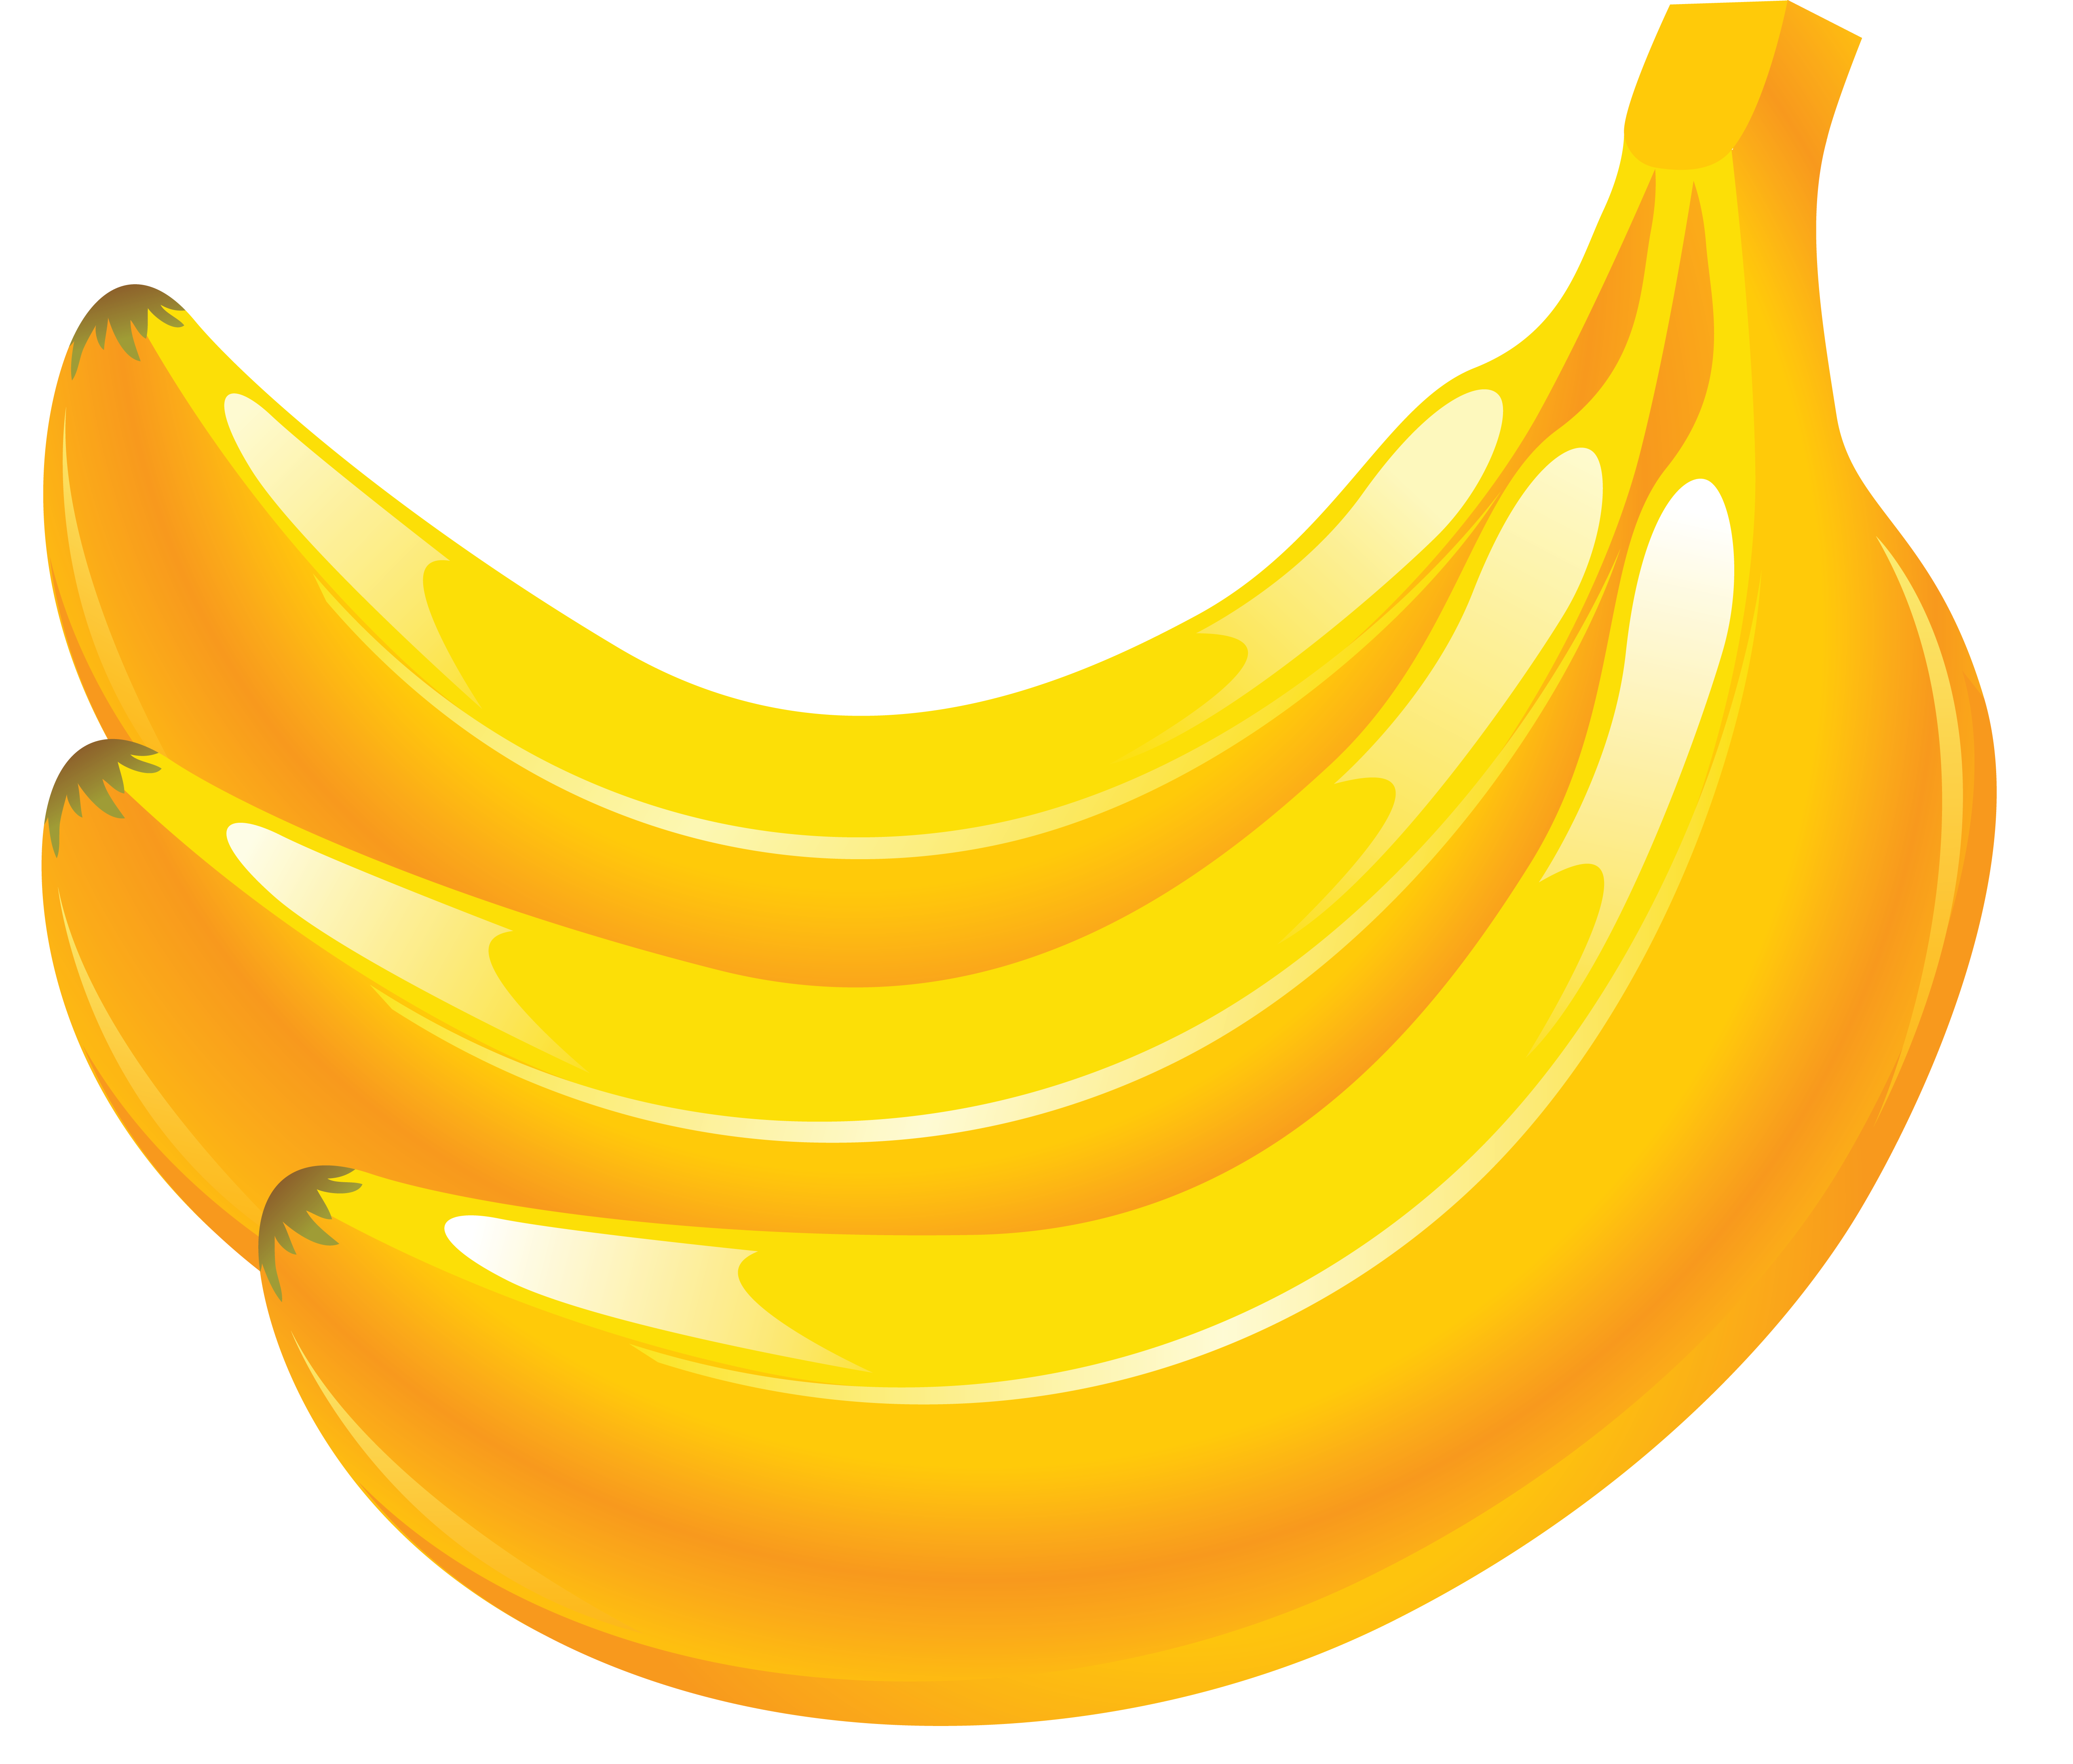 3 yellow bananas PNG